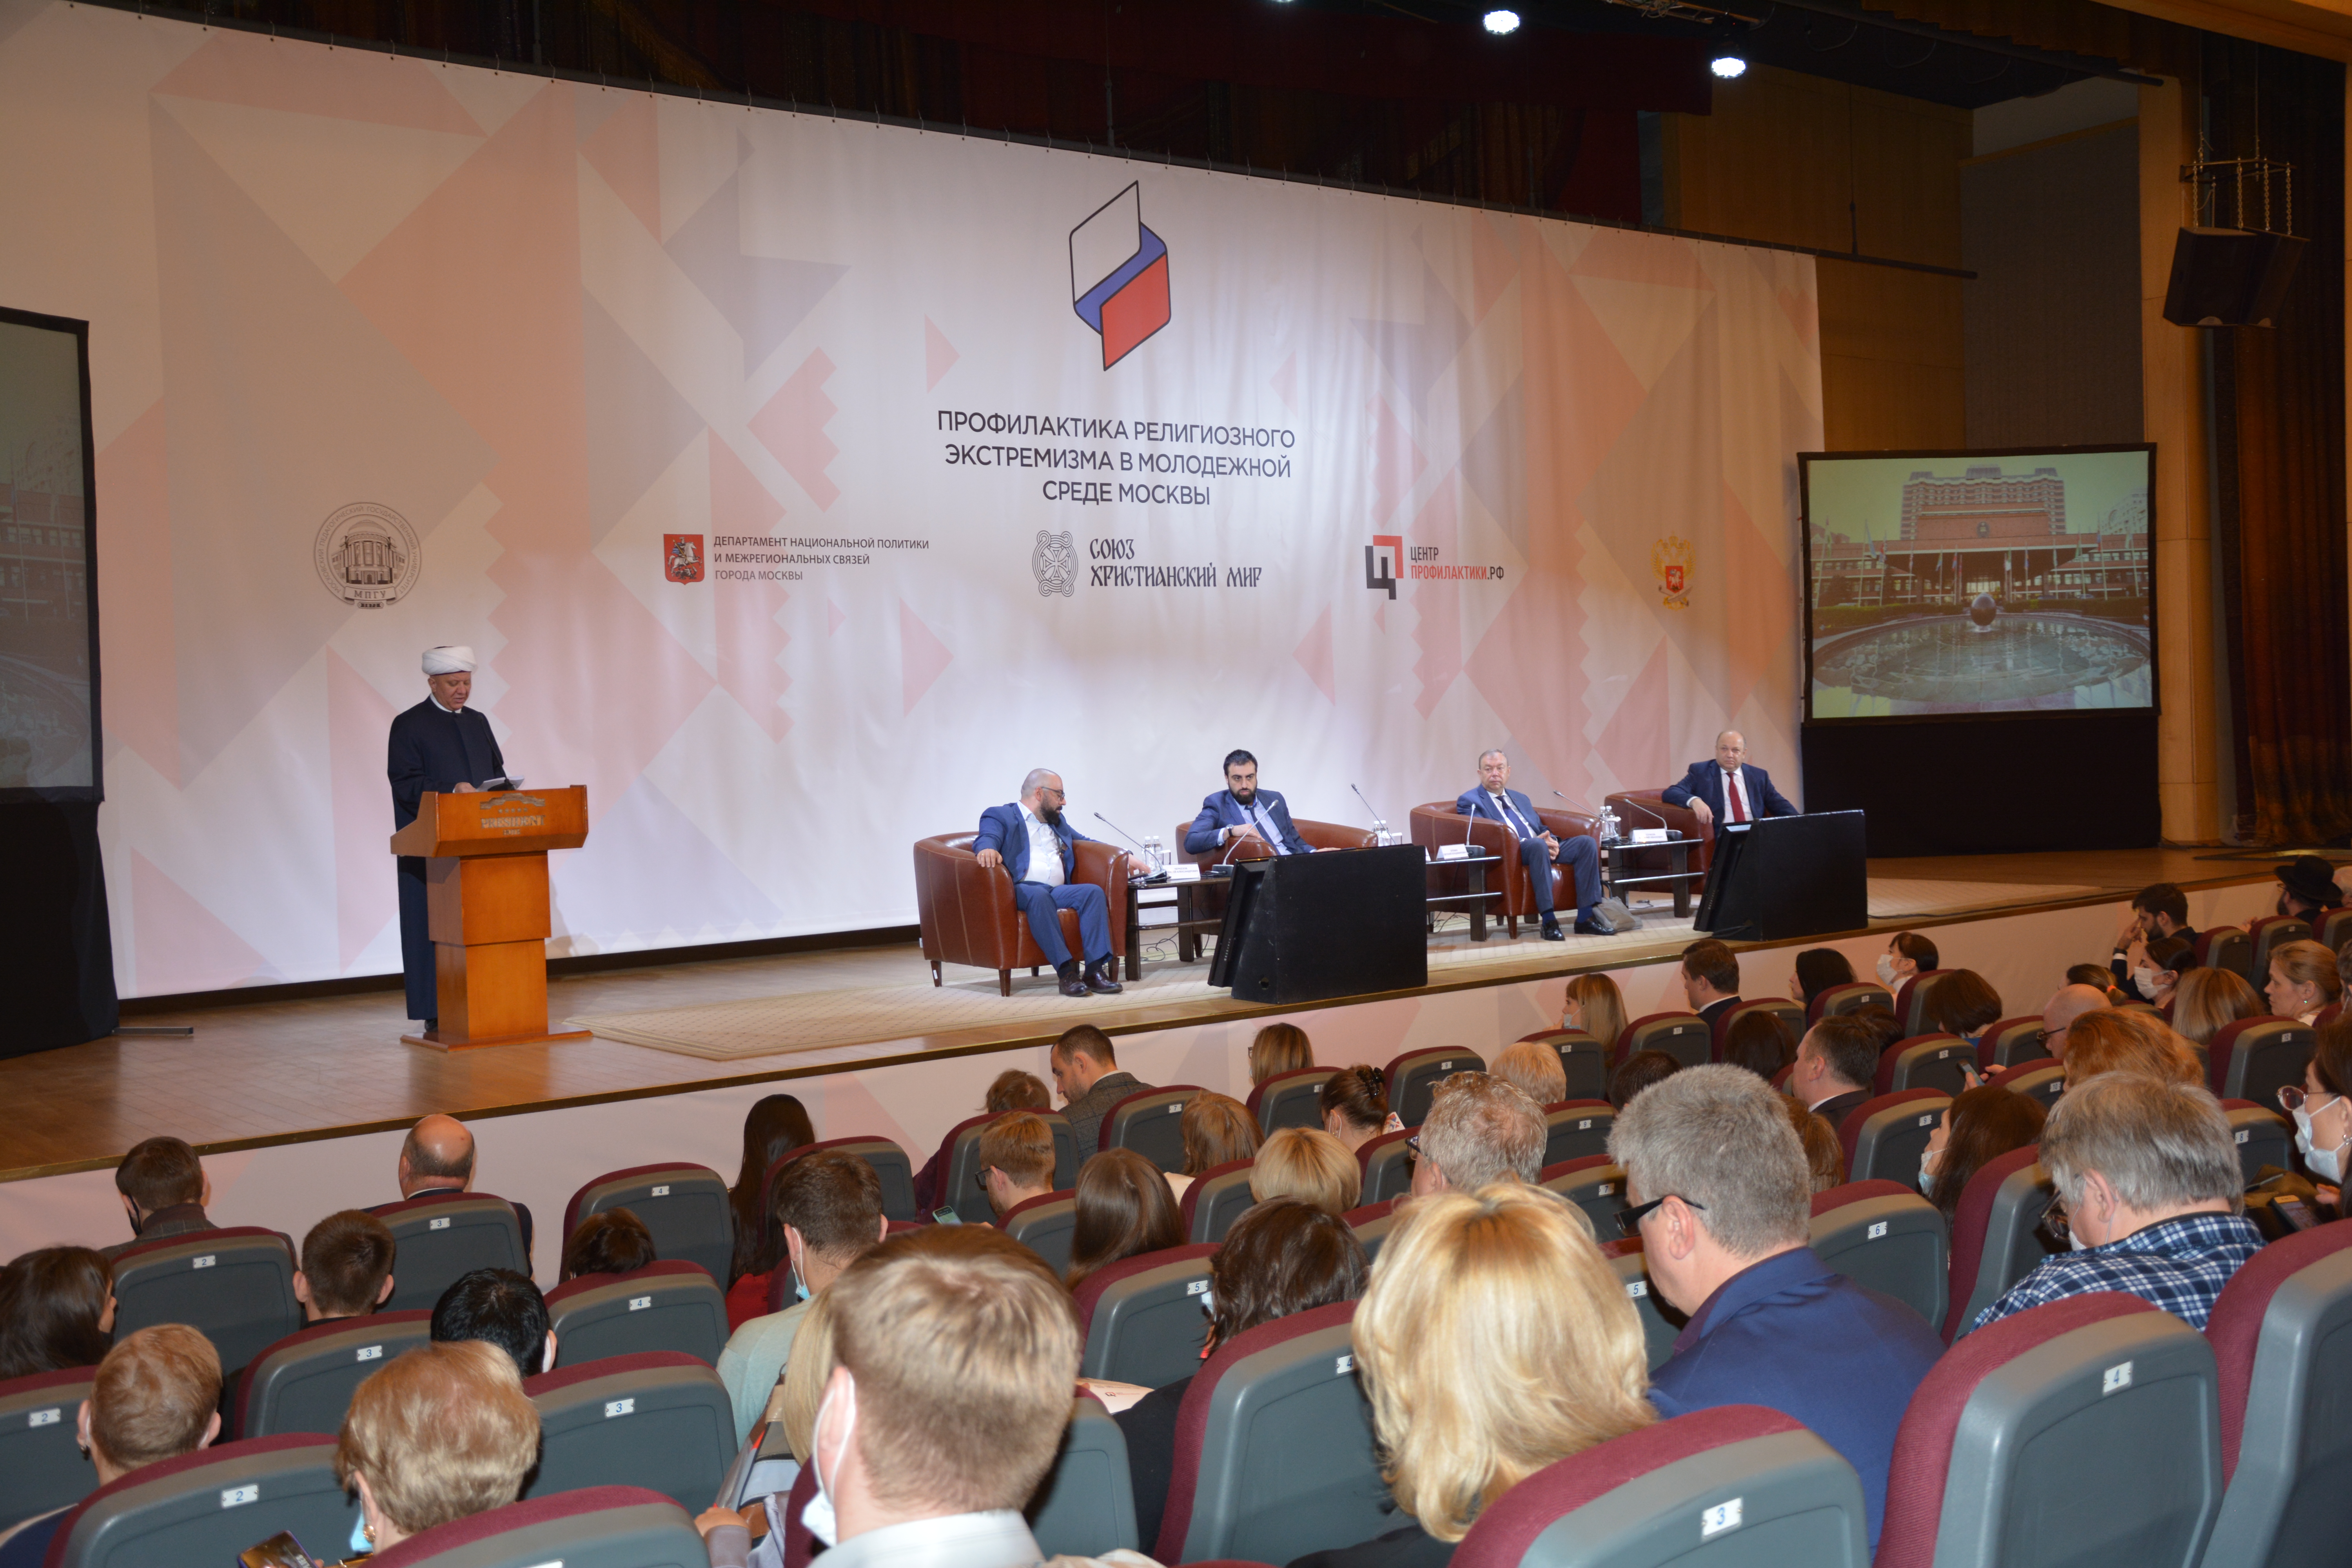 В Москве состоялась конференция по профилактике религиозного экстремизма в молодежной среде